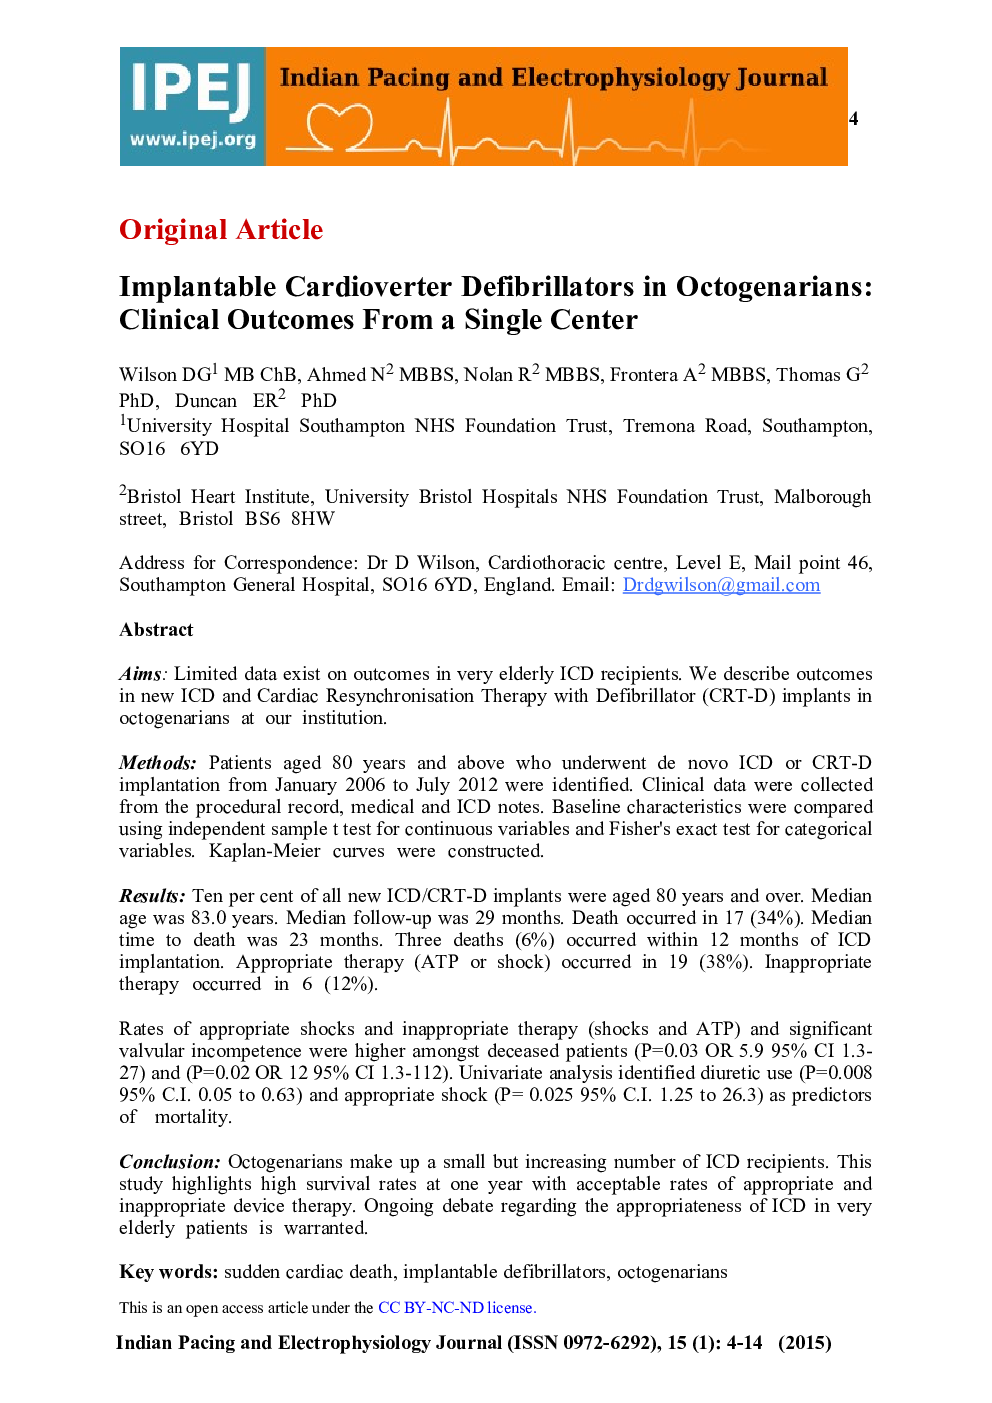 دفیبریلاتورهای Cardioverter قابل کاشت در Octogenarians: نتایج کلینیکی از یک مرکز واحد